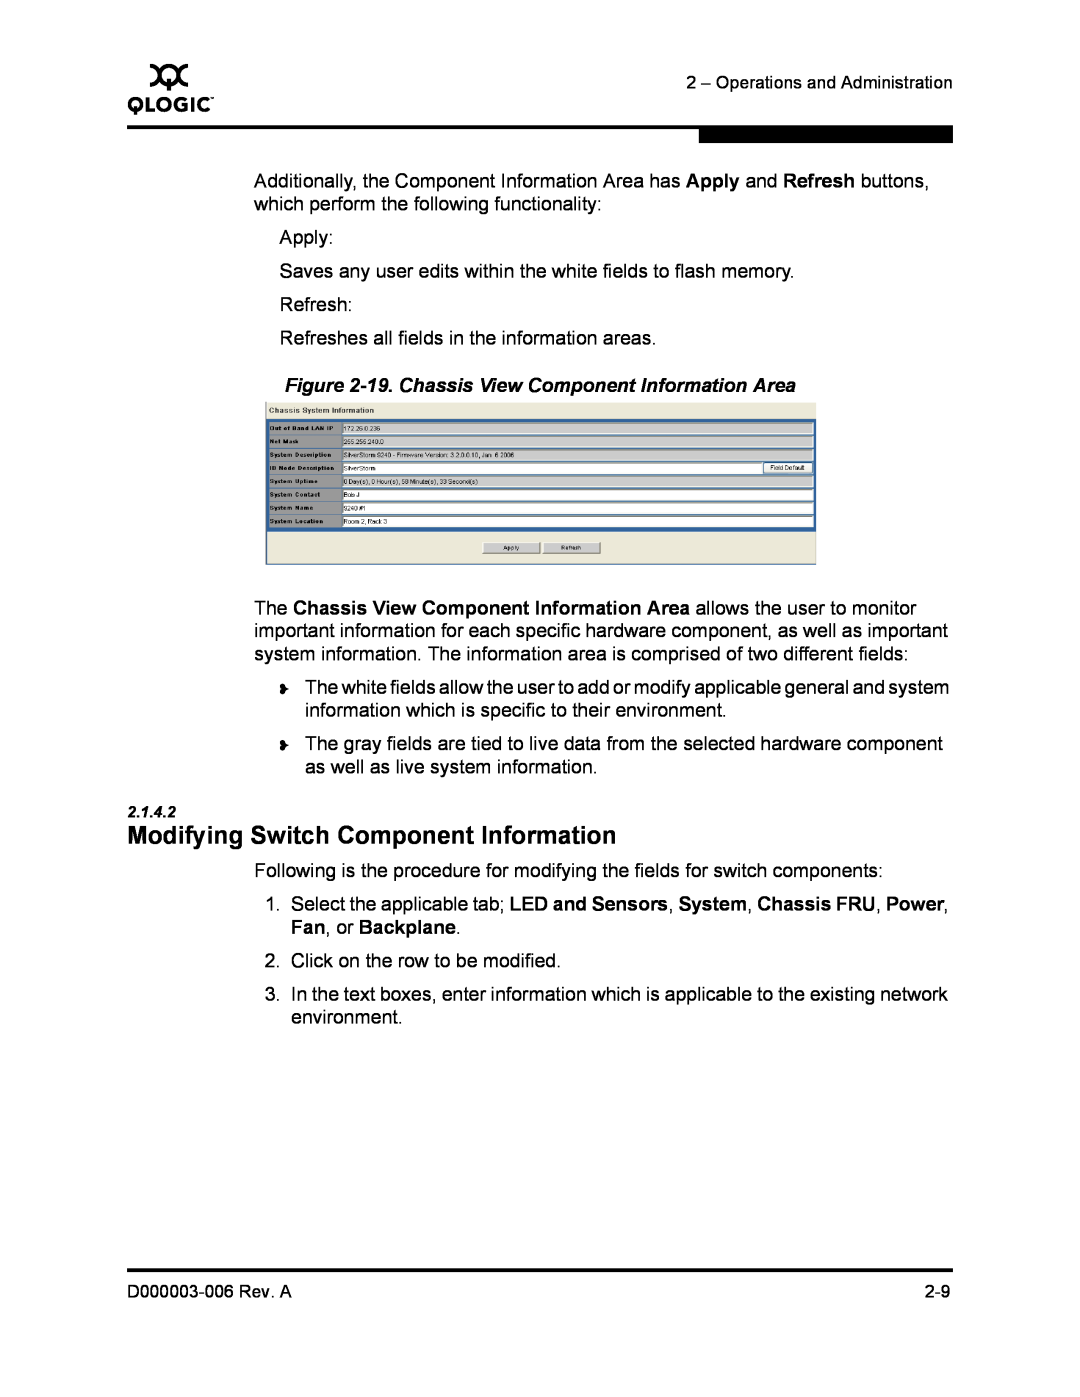 Q-Logic 9000 manual Modifying Switch Component Information, 19. Chassis View Component Information Area 